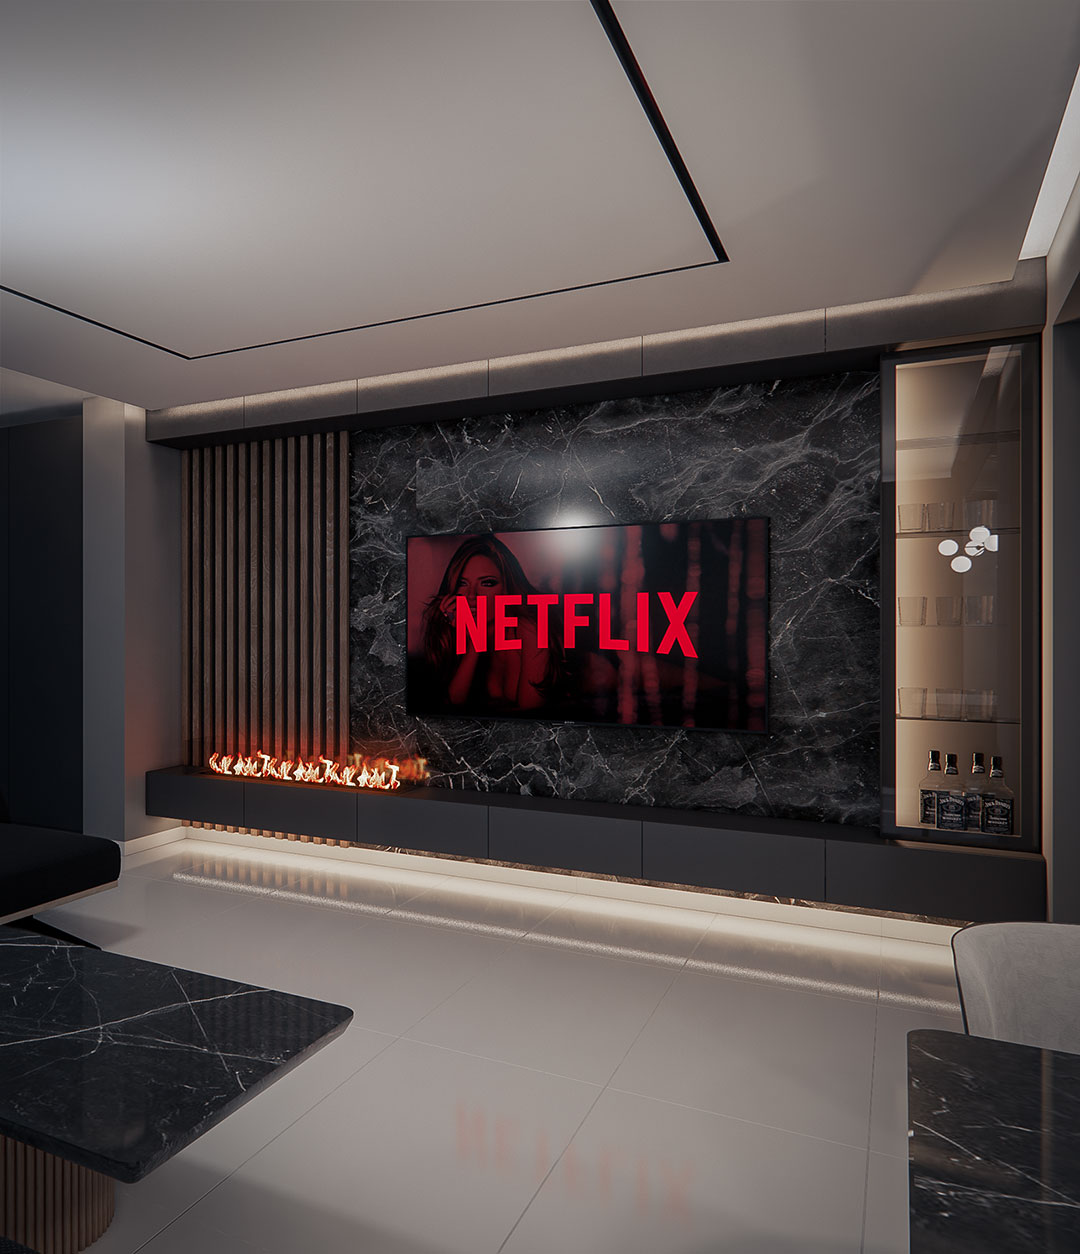 Design interior minimalist Netflix